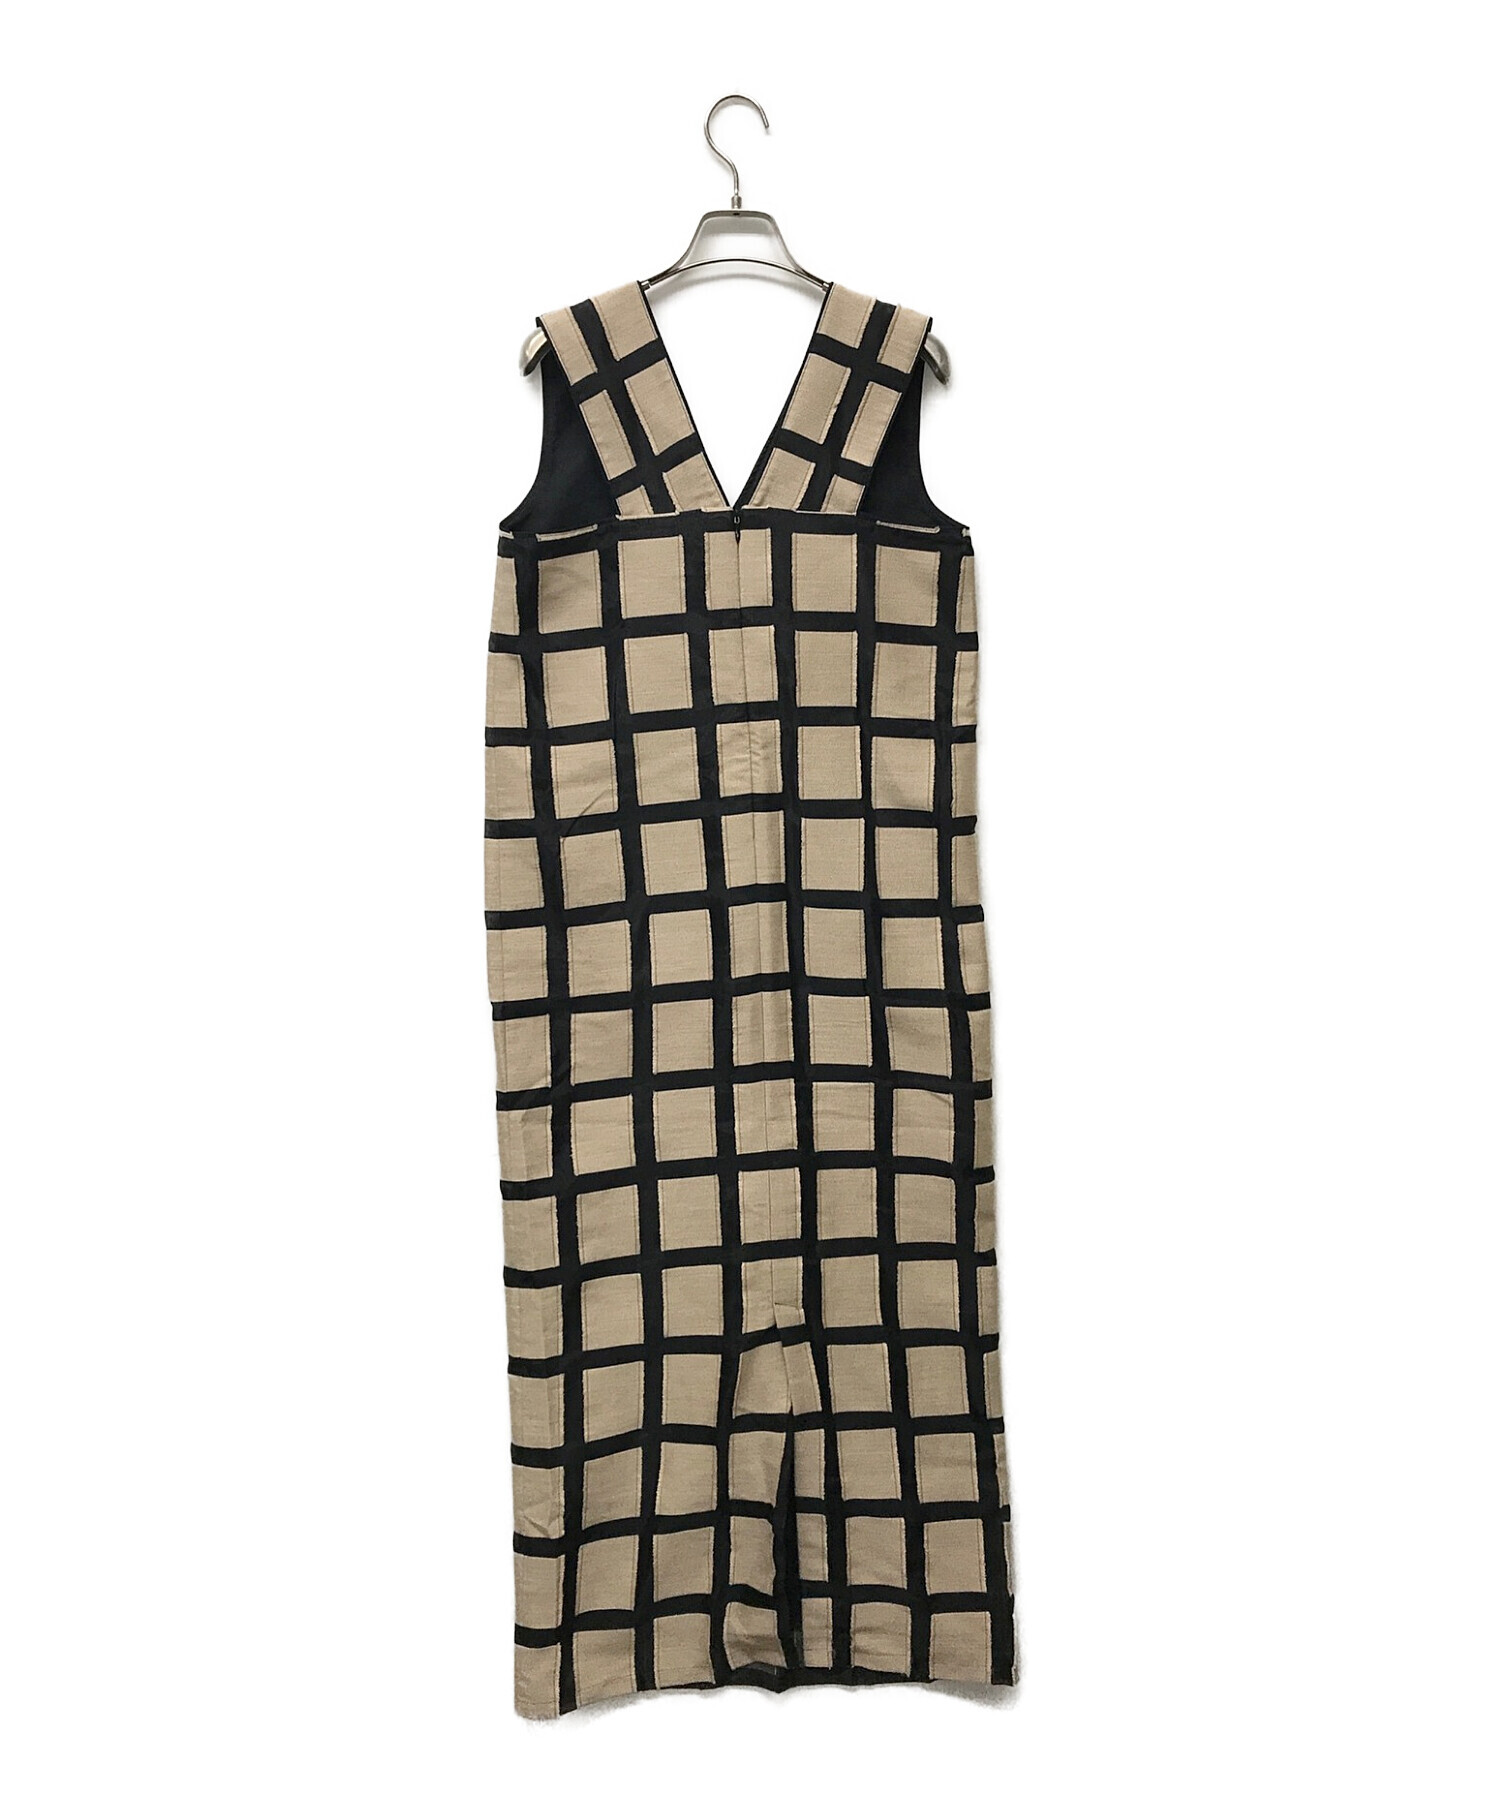 Louren (ローレン) geometric jacquard pencil dress（ジオメトリックジャガードペンシルドレス）  ブラック×ベージュ サイズ:M